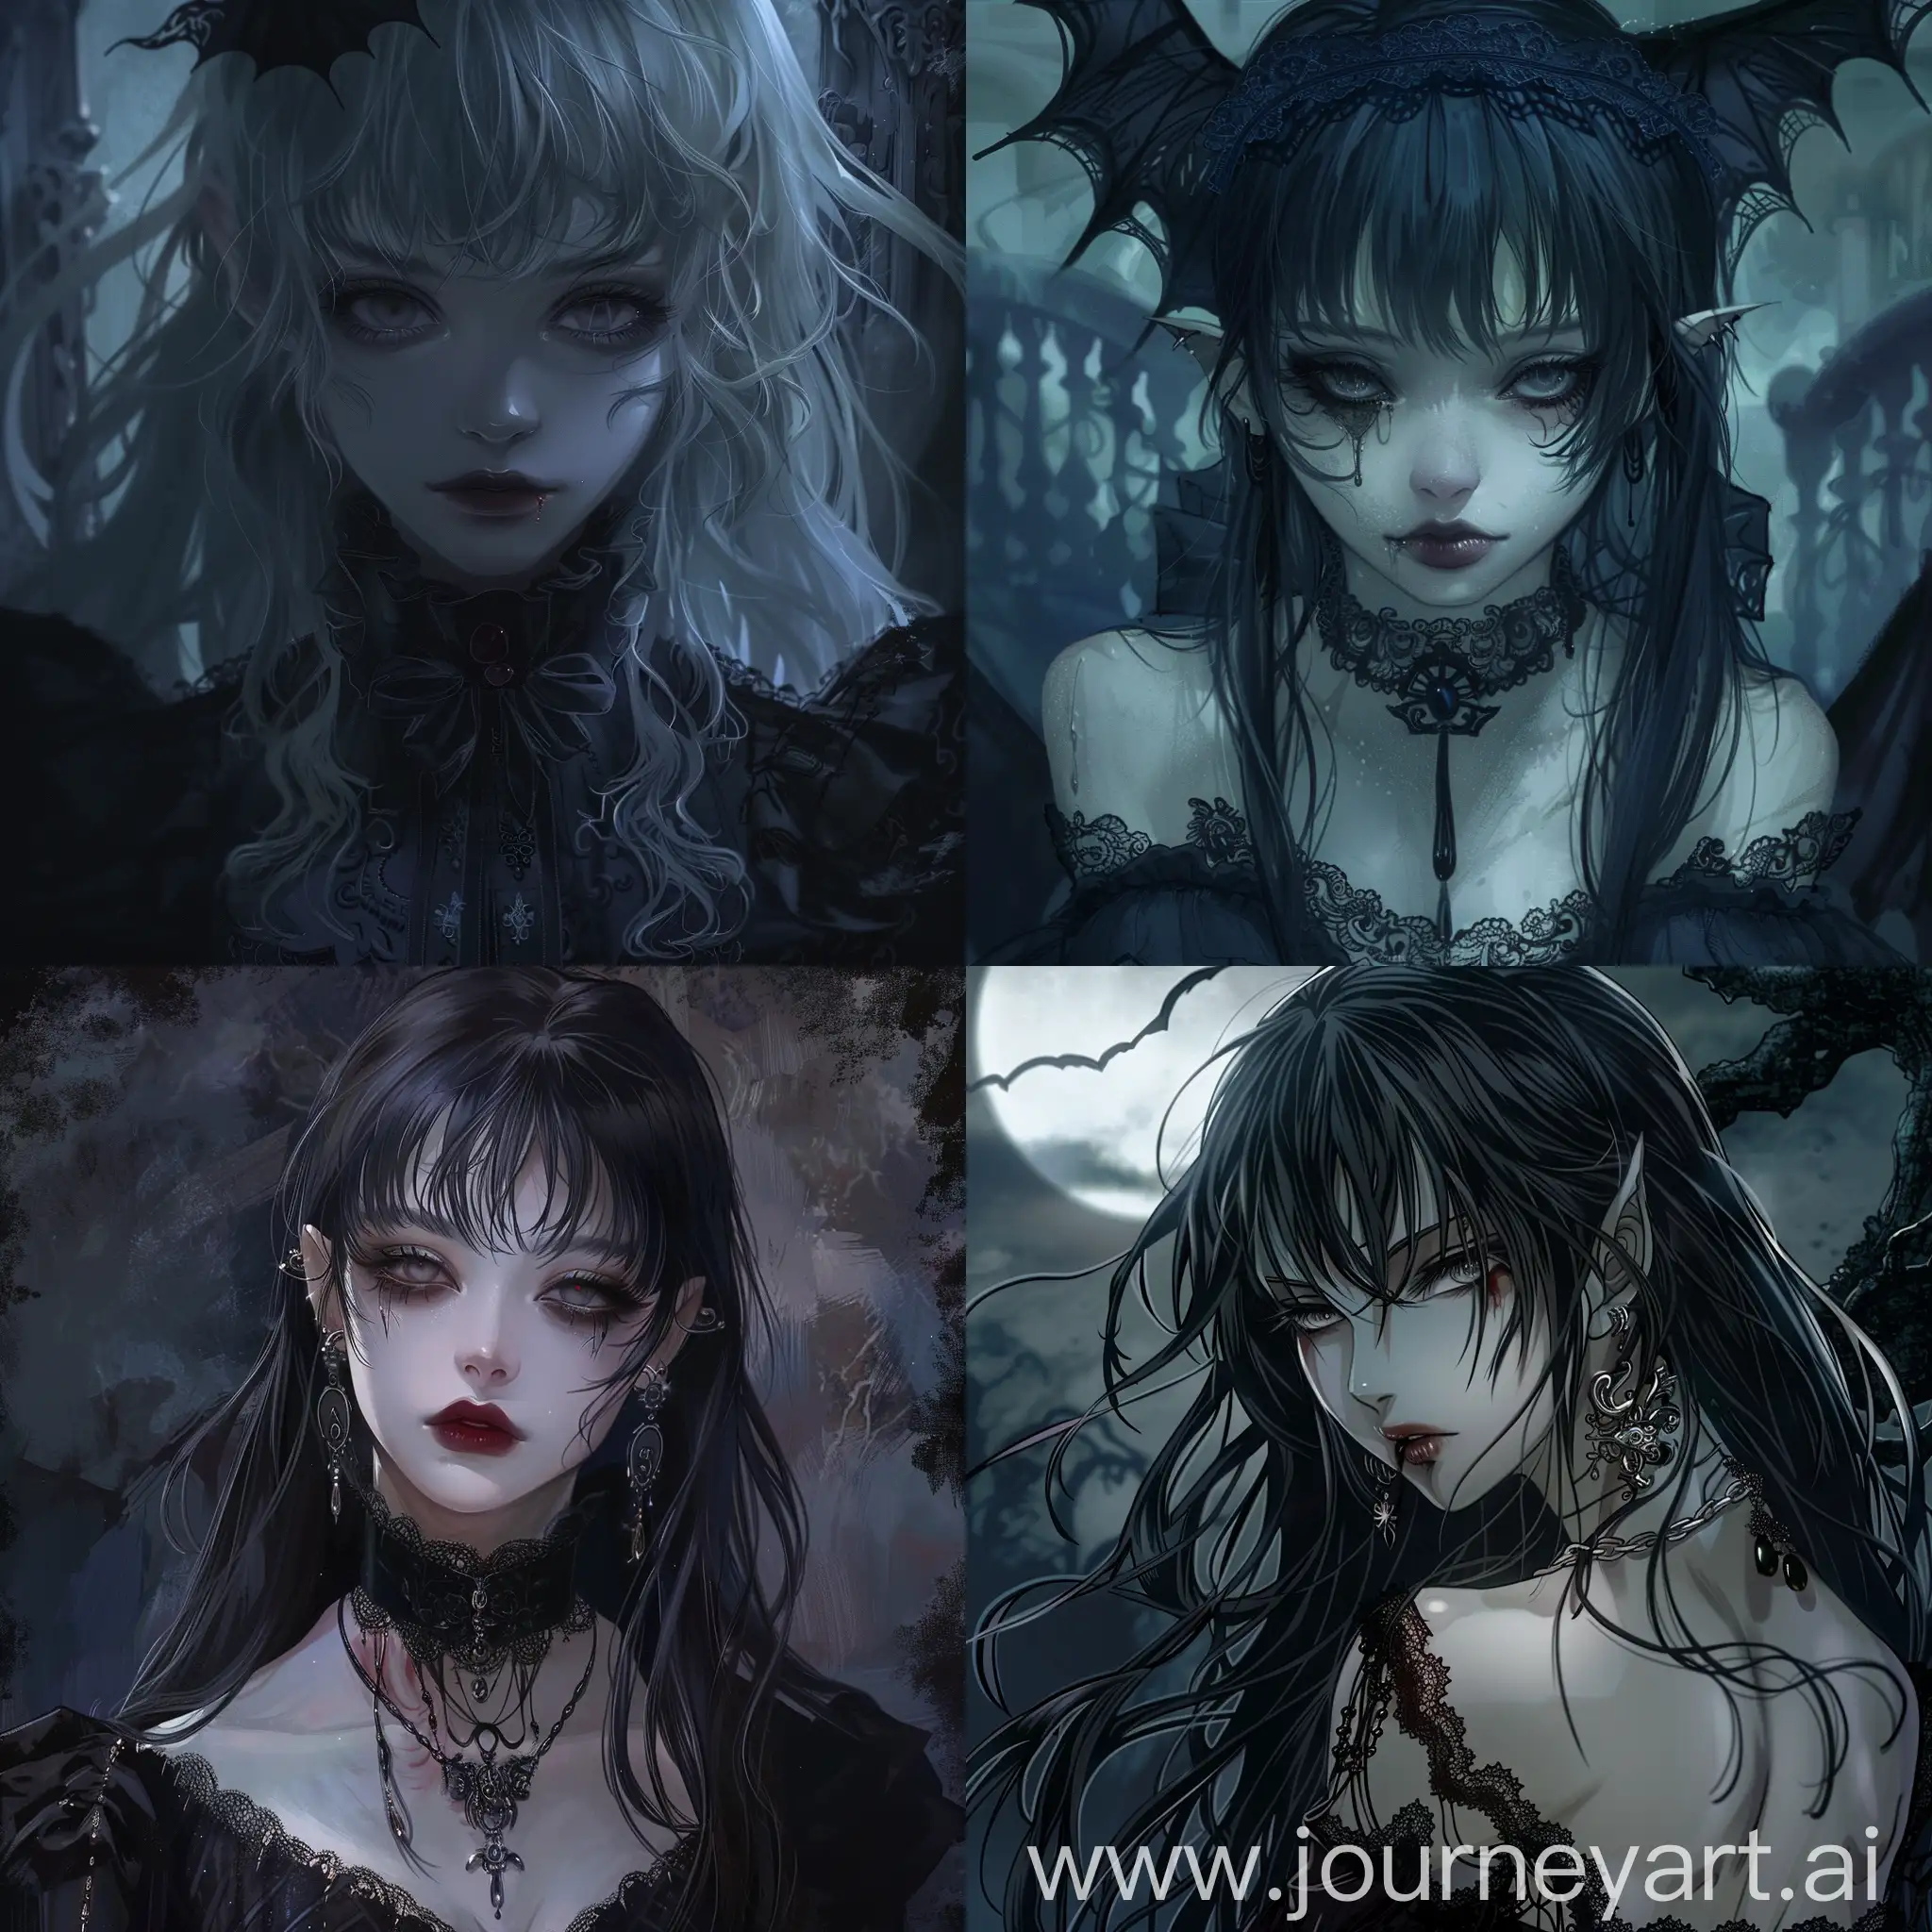 Dark fantasy, gothic horror, anime style, vampire